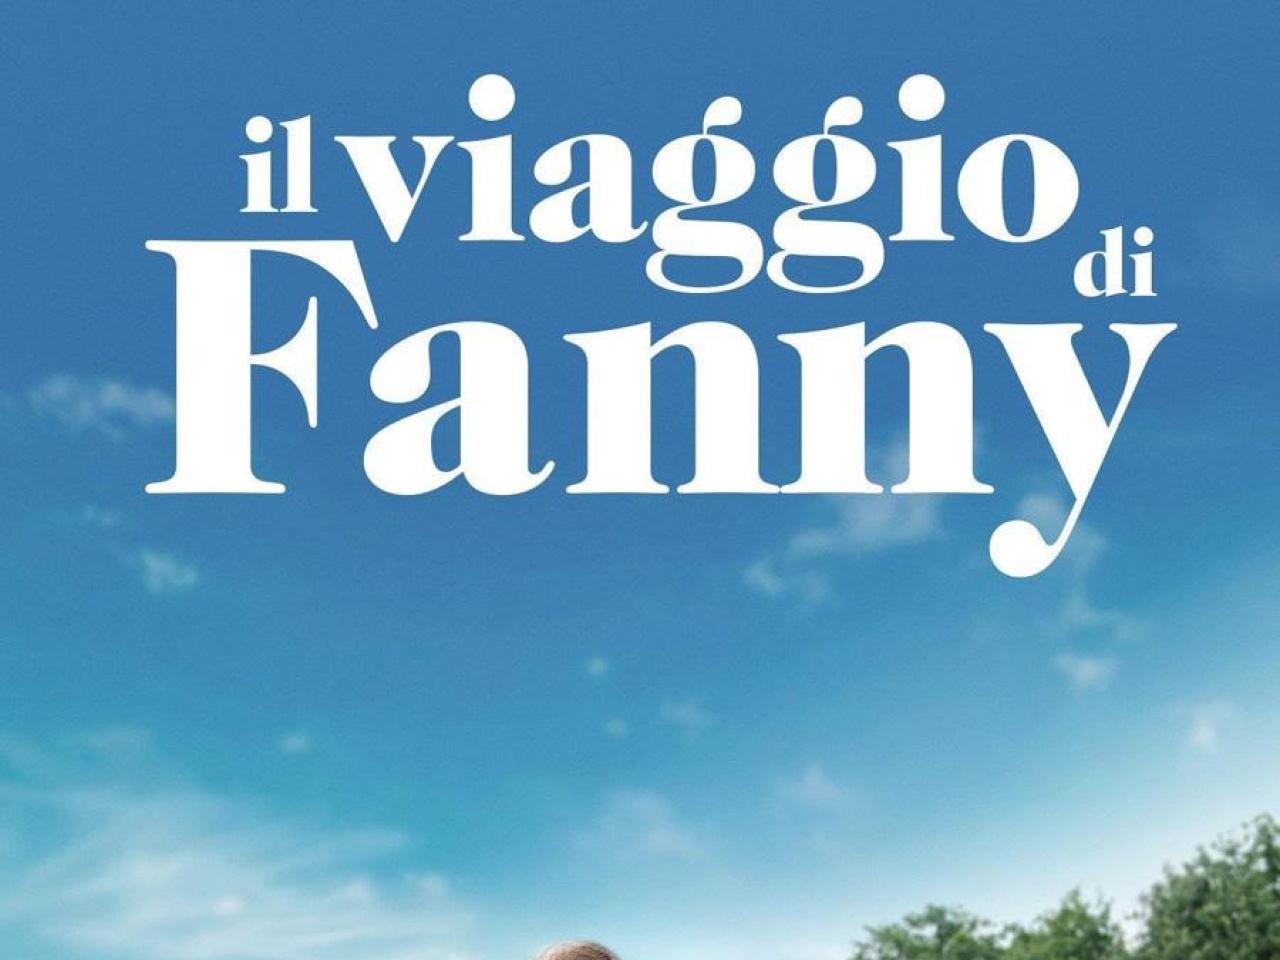 Il Viaggio Di Fanny